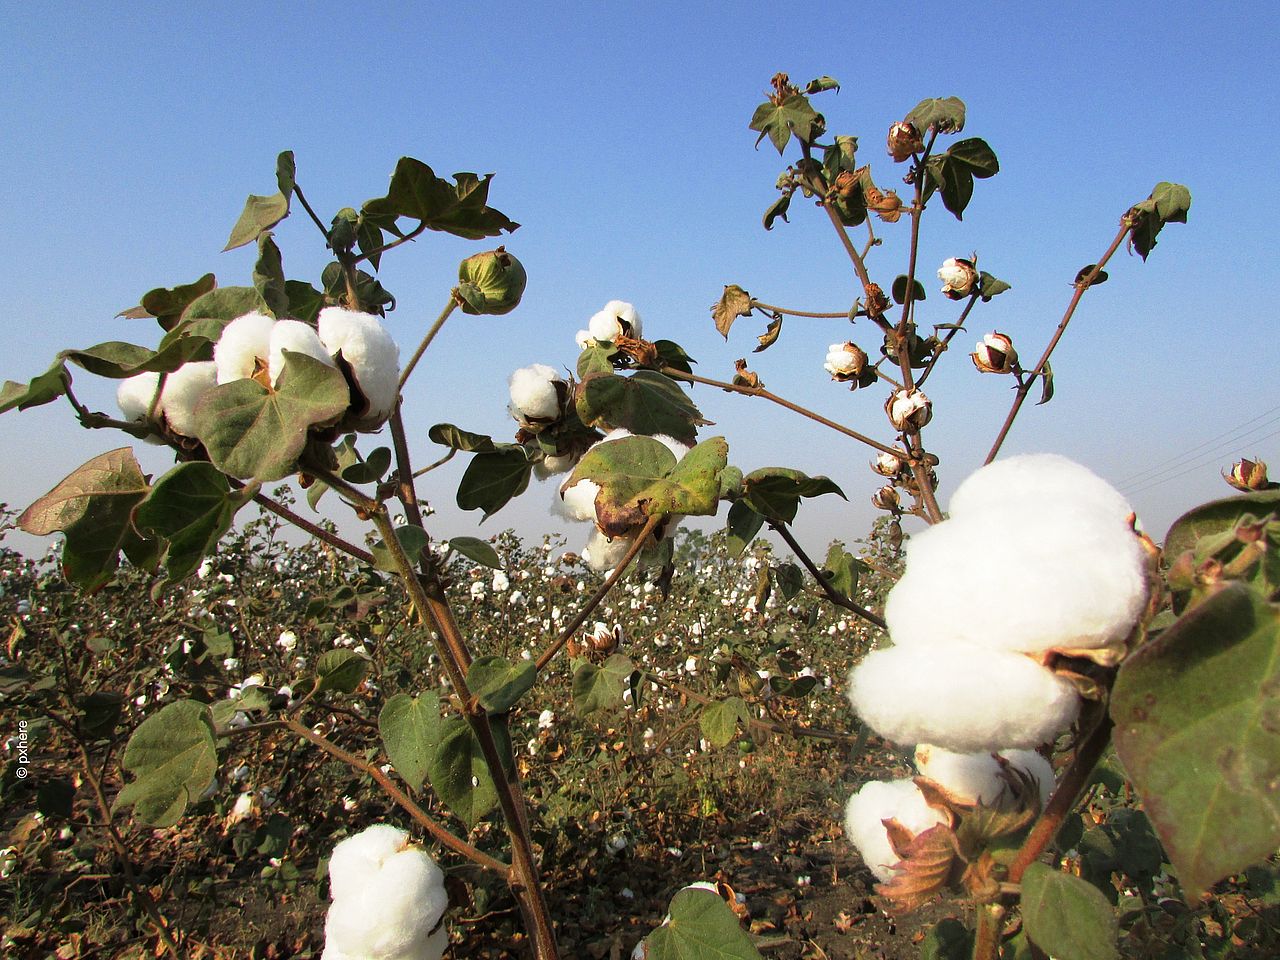 Baumwolle besteht zu 90 Prozent aus Cellulose